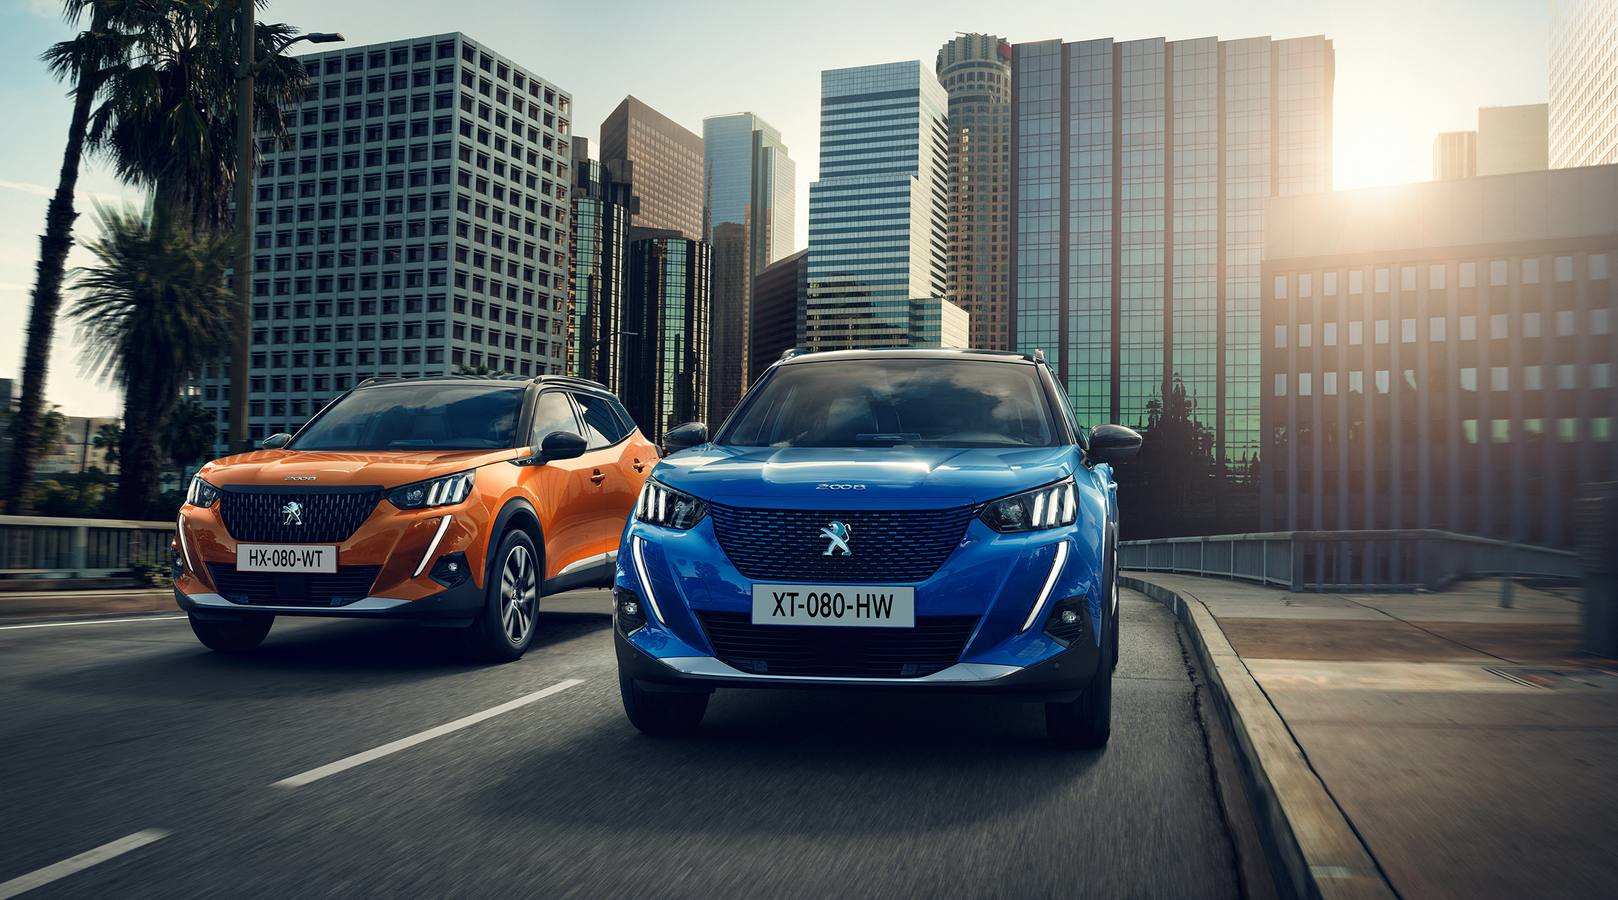 El nuevo Peugeot 2008 se fabricará en Vigo. Además de las habituales mecánicas en gasolina y diésel, también se ofrecerá una variante eléctrica. Llega a finales de año.